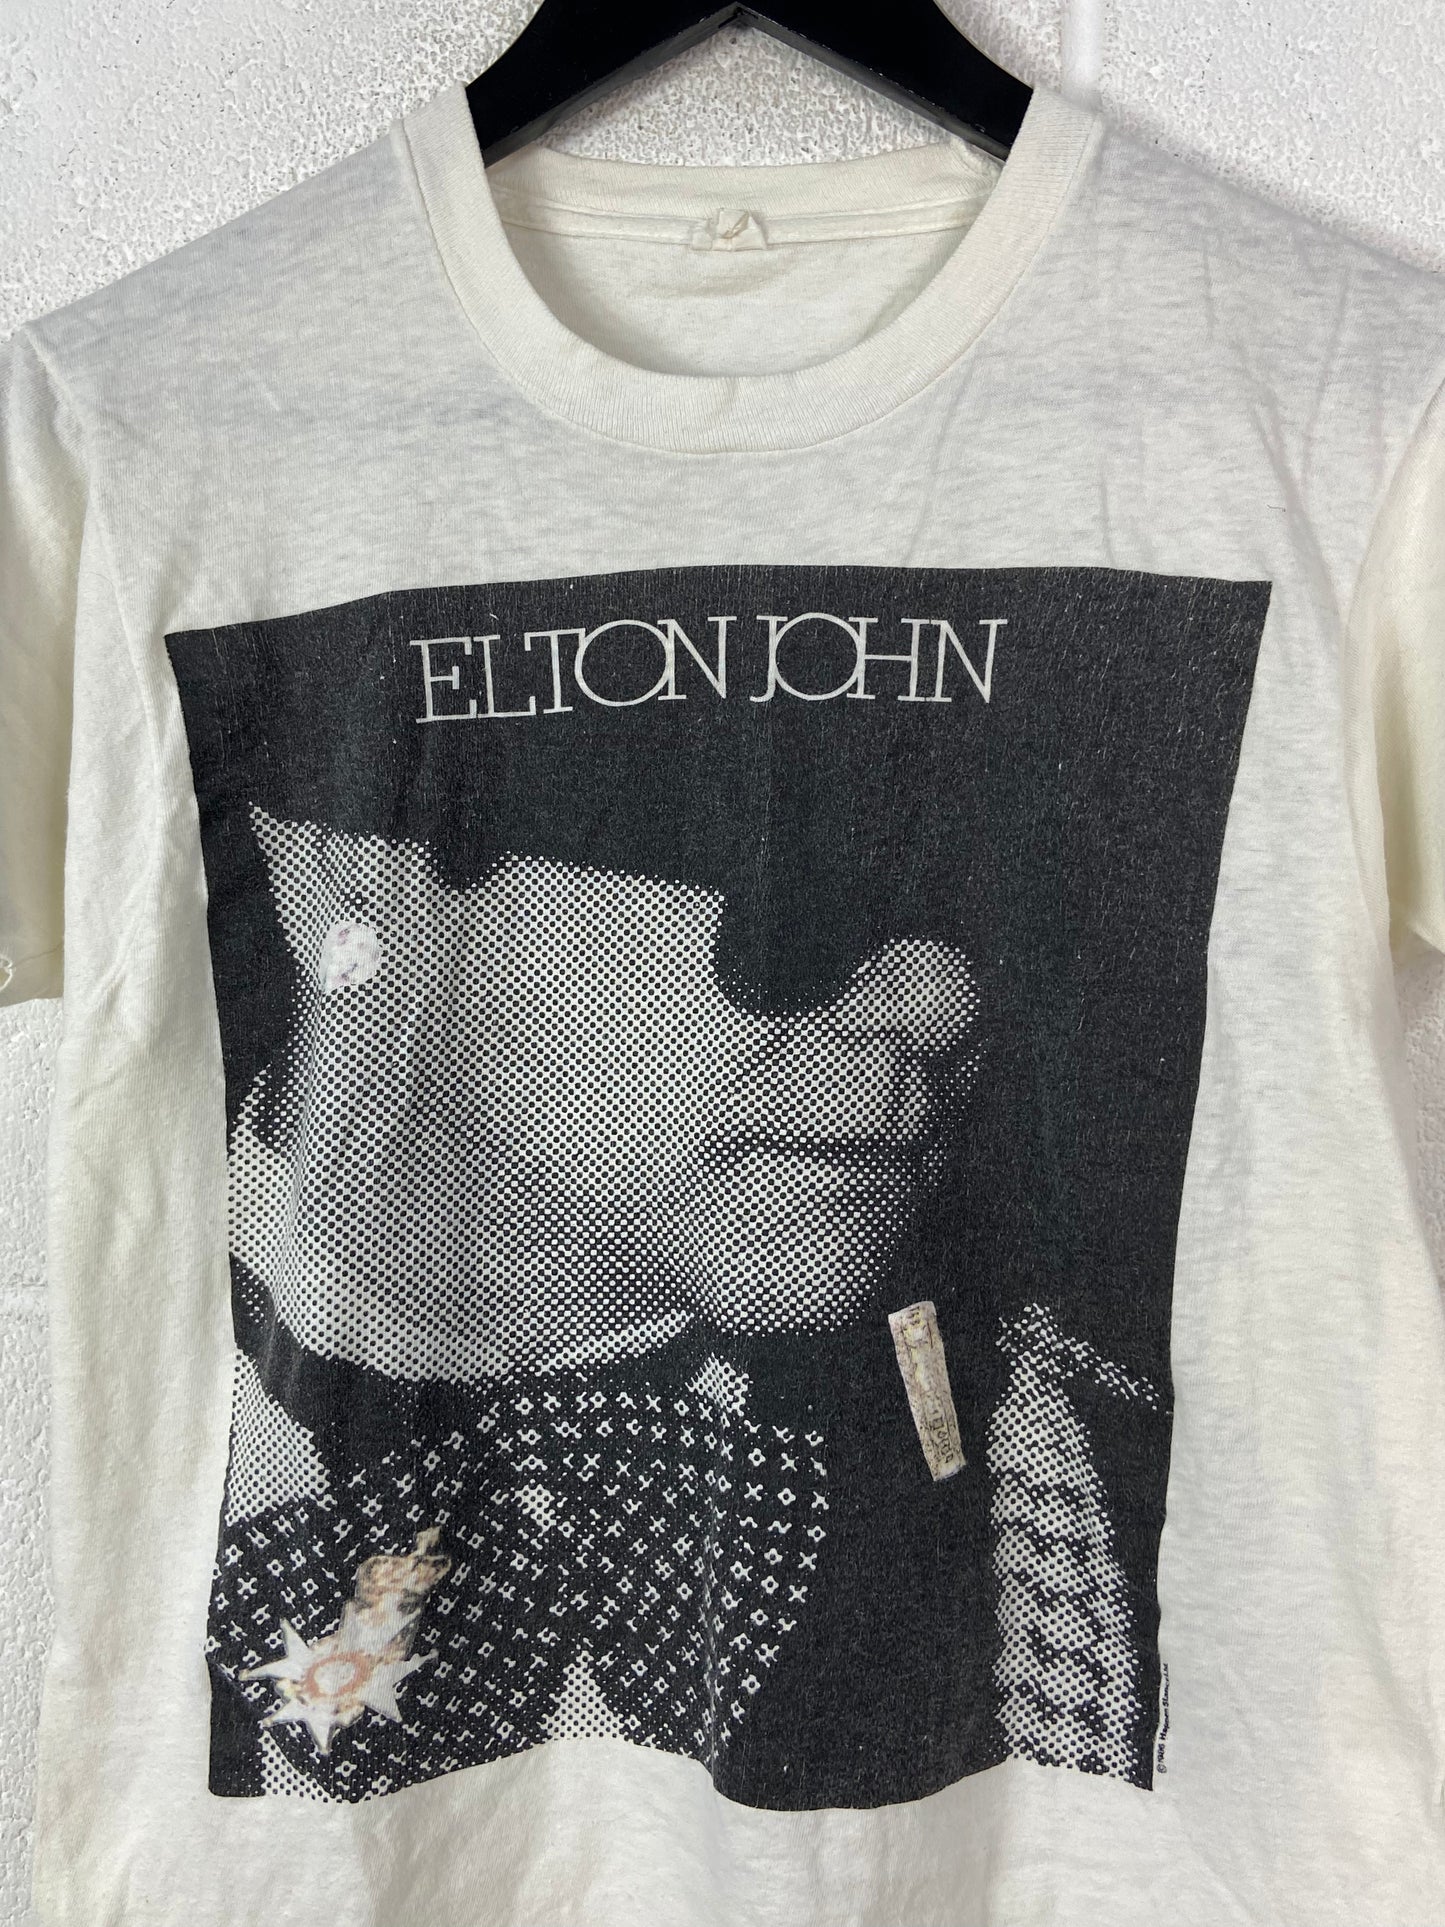 VTG Elton John 86' World Tour T-Shirt Sz S